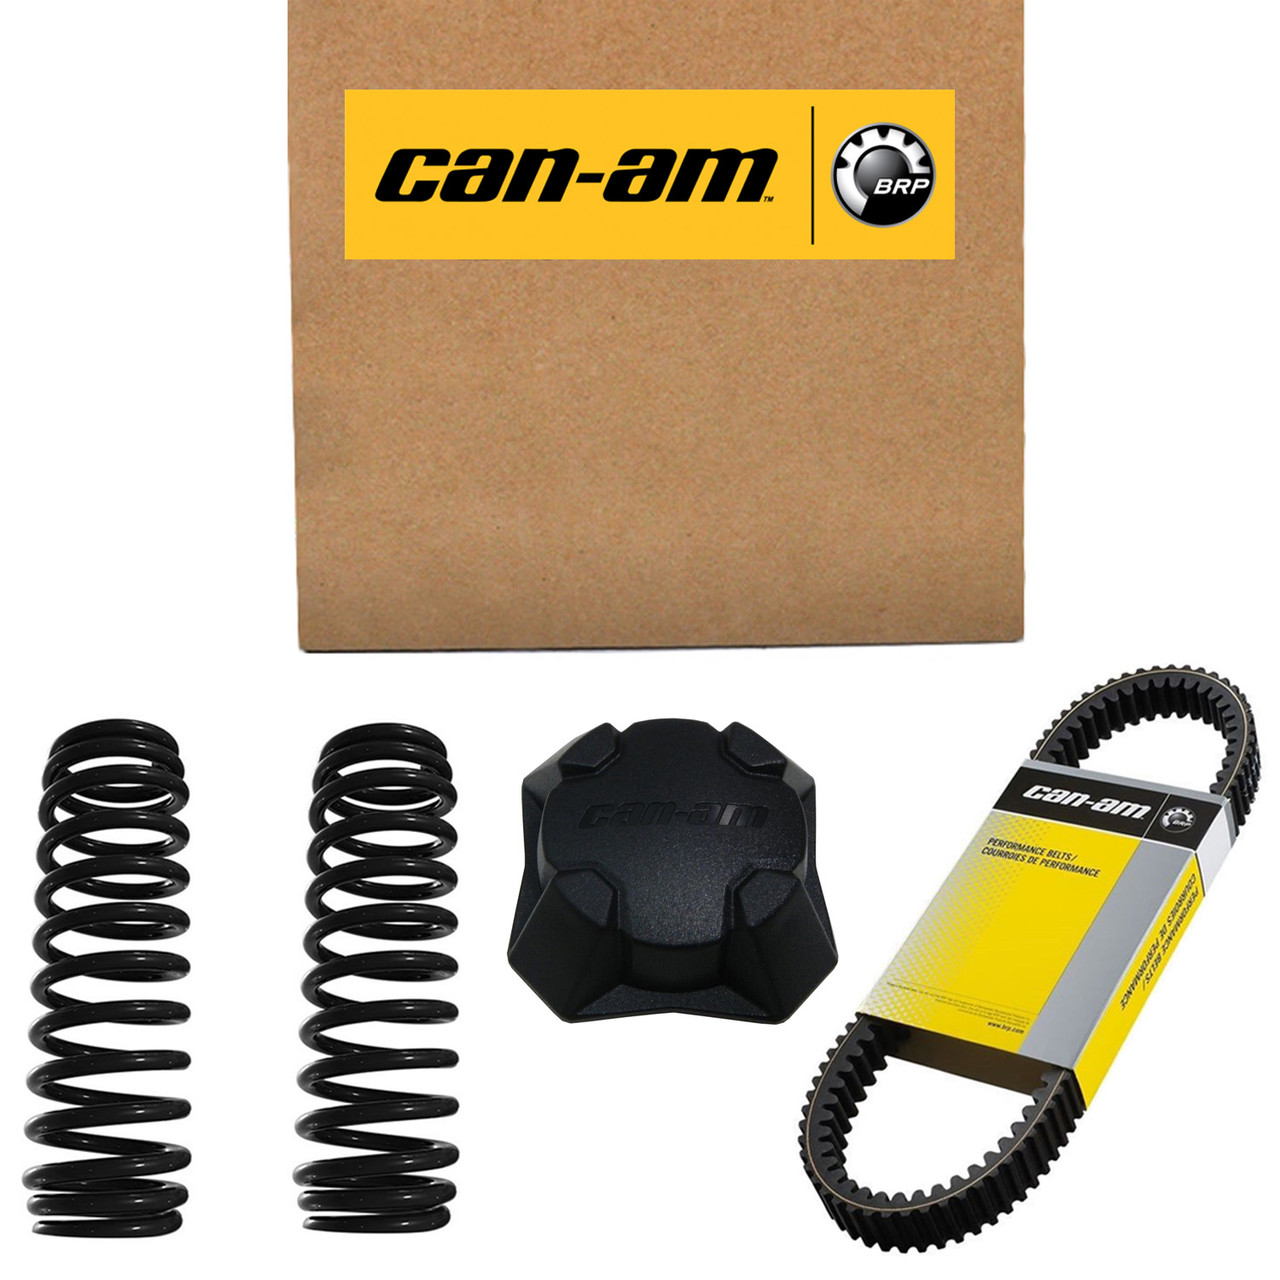 Can-Am New OEM Rh Rear Reflector, 705005949